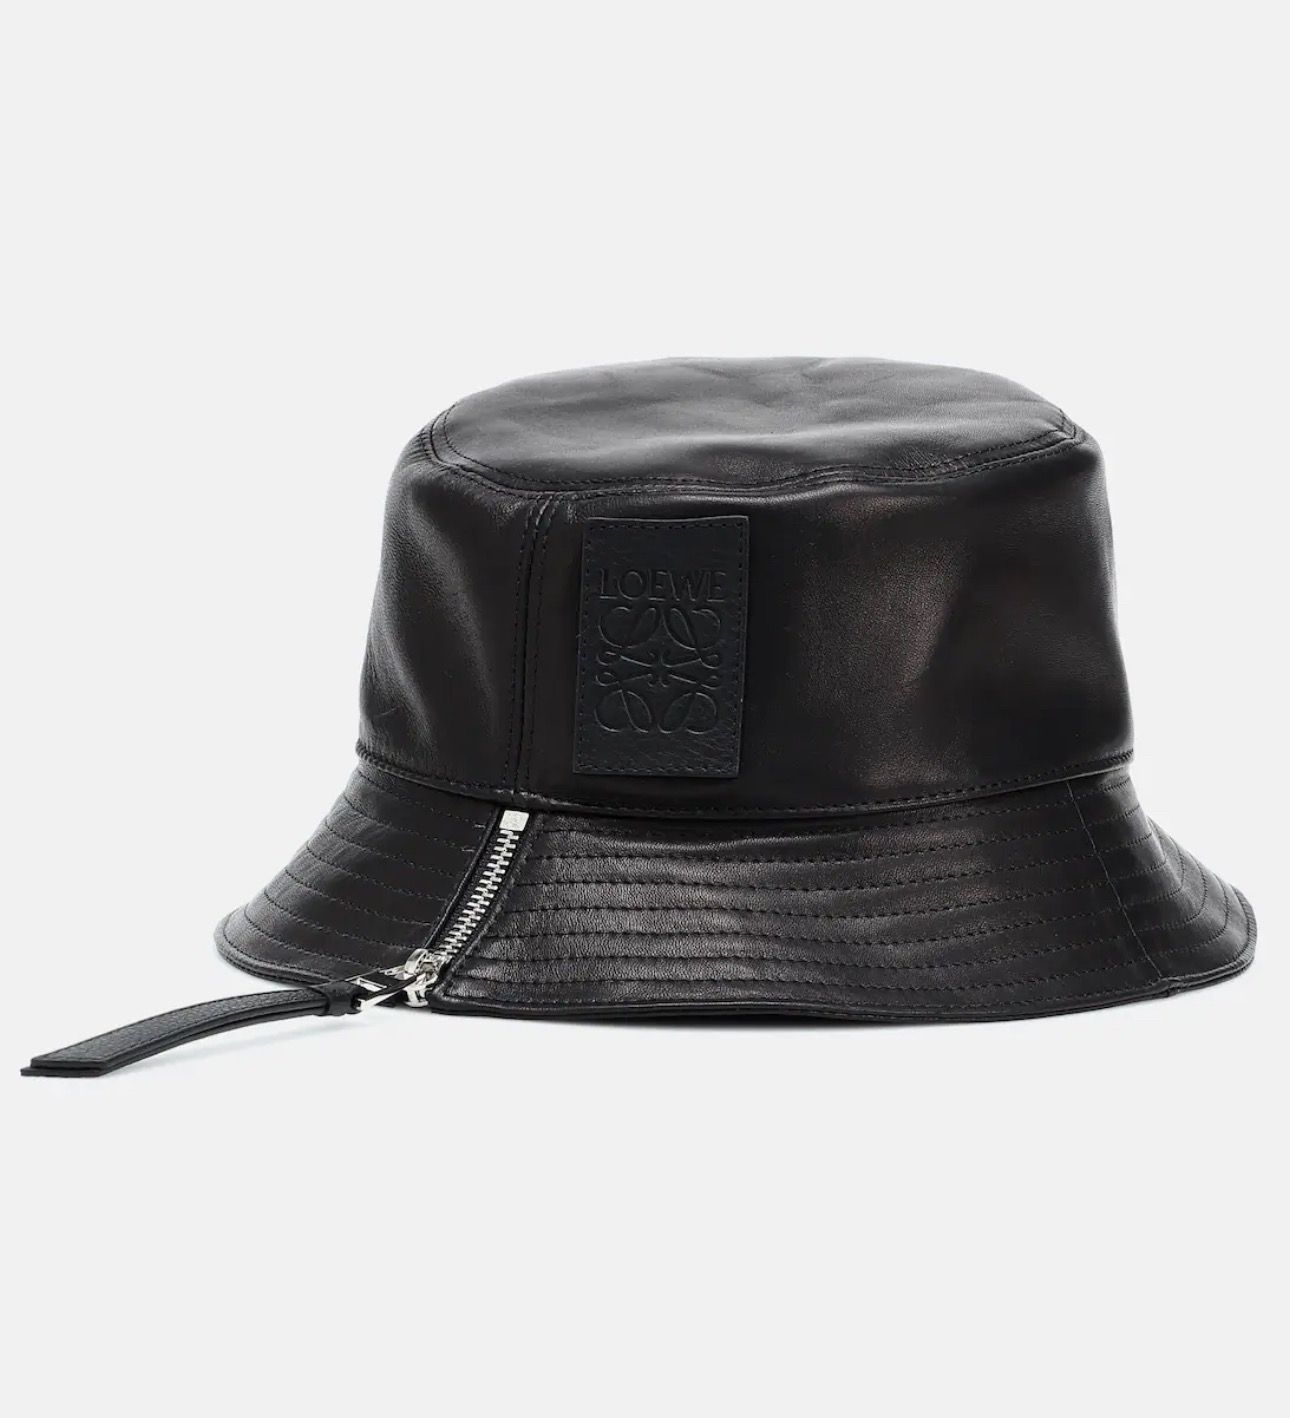 Pre-owned Loewe Black Leather Bucket Hat